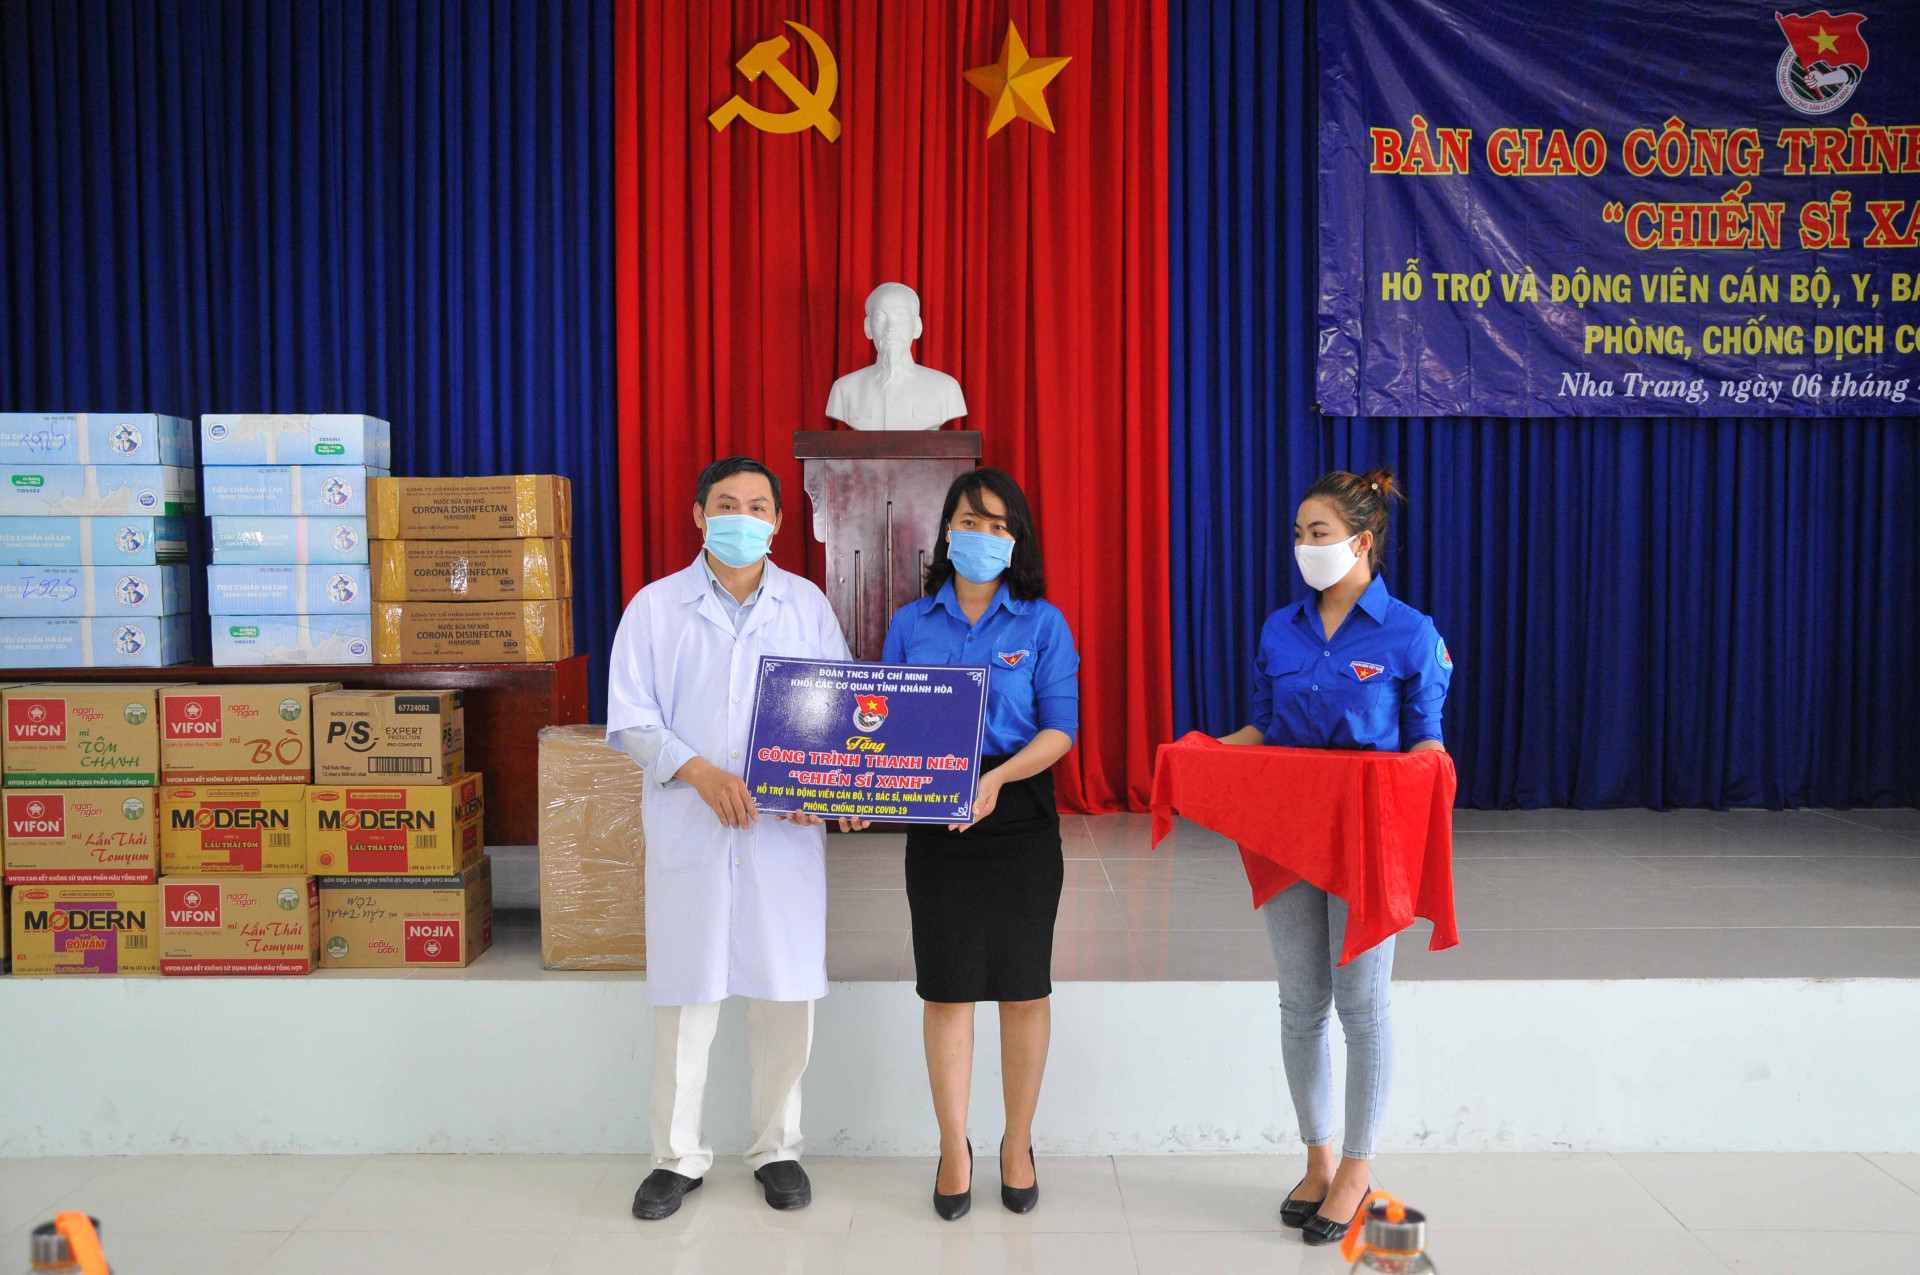 Đoàn Khối các cơ quan tỉnh bàn giao các vật dụng y tế cho lãnh đạo Bệnh viện Bệnh nhiệt đới tỉnh